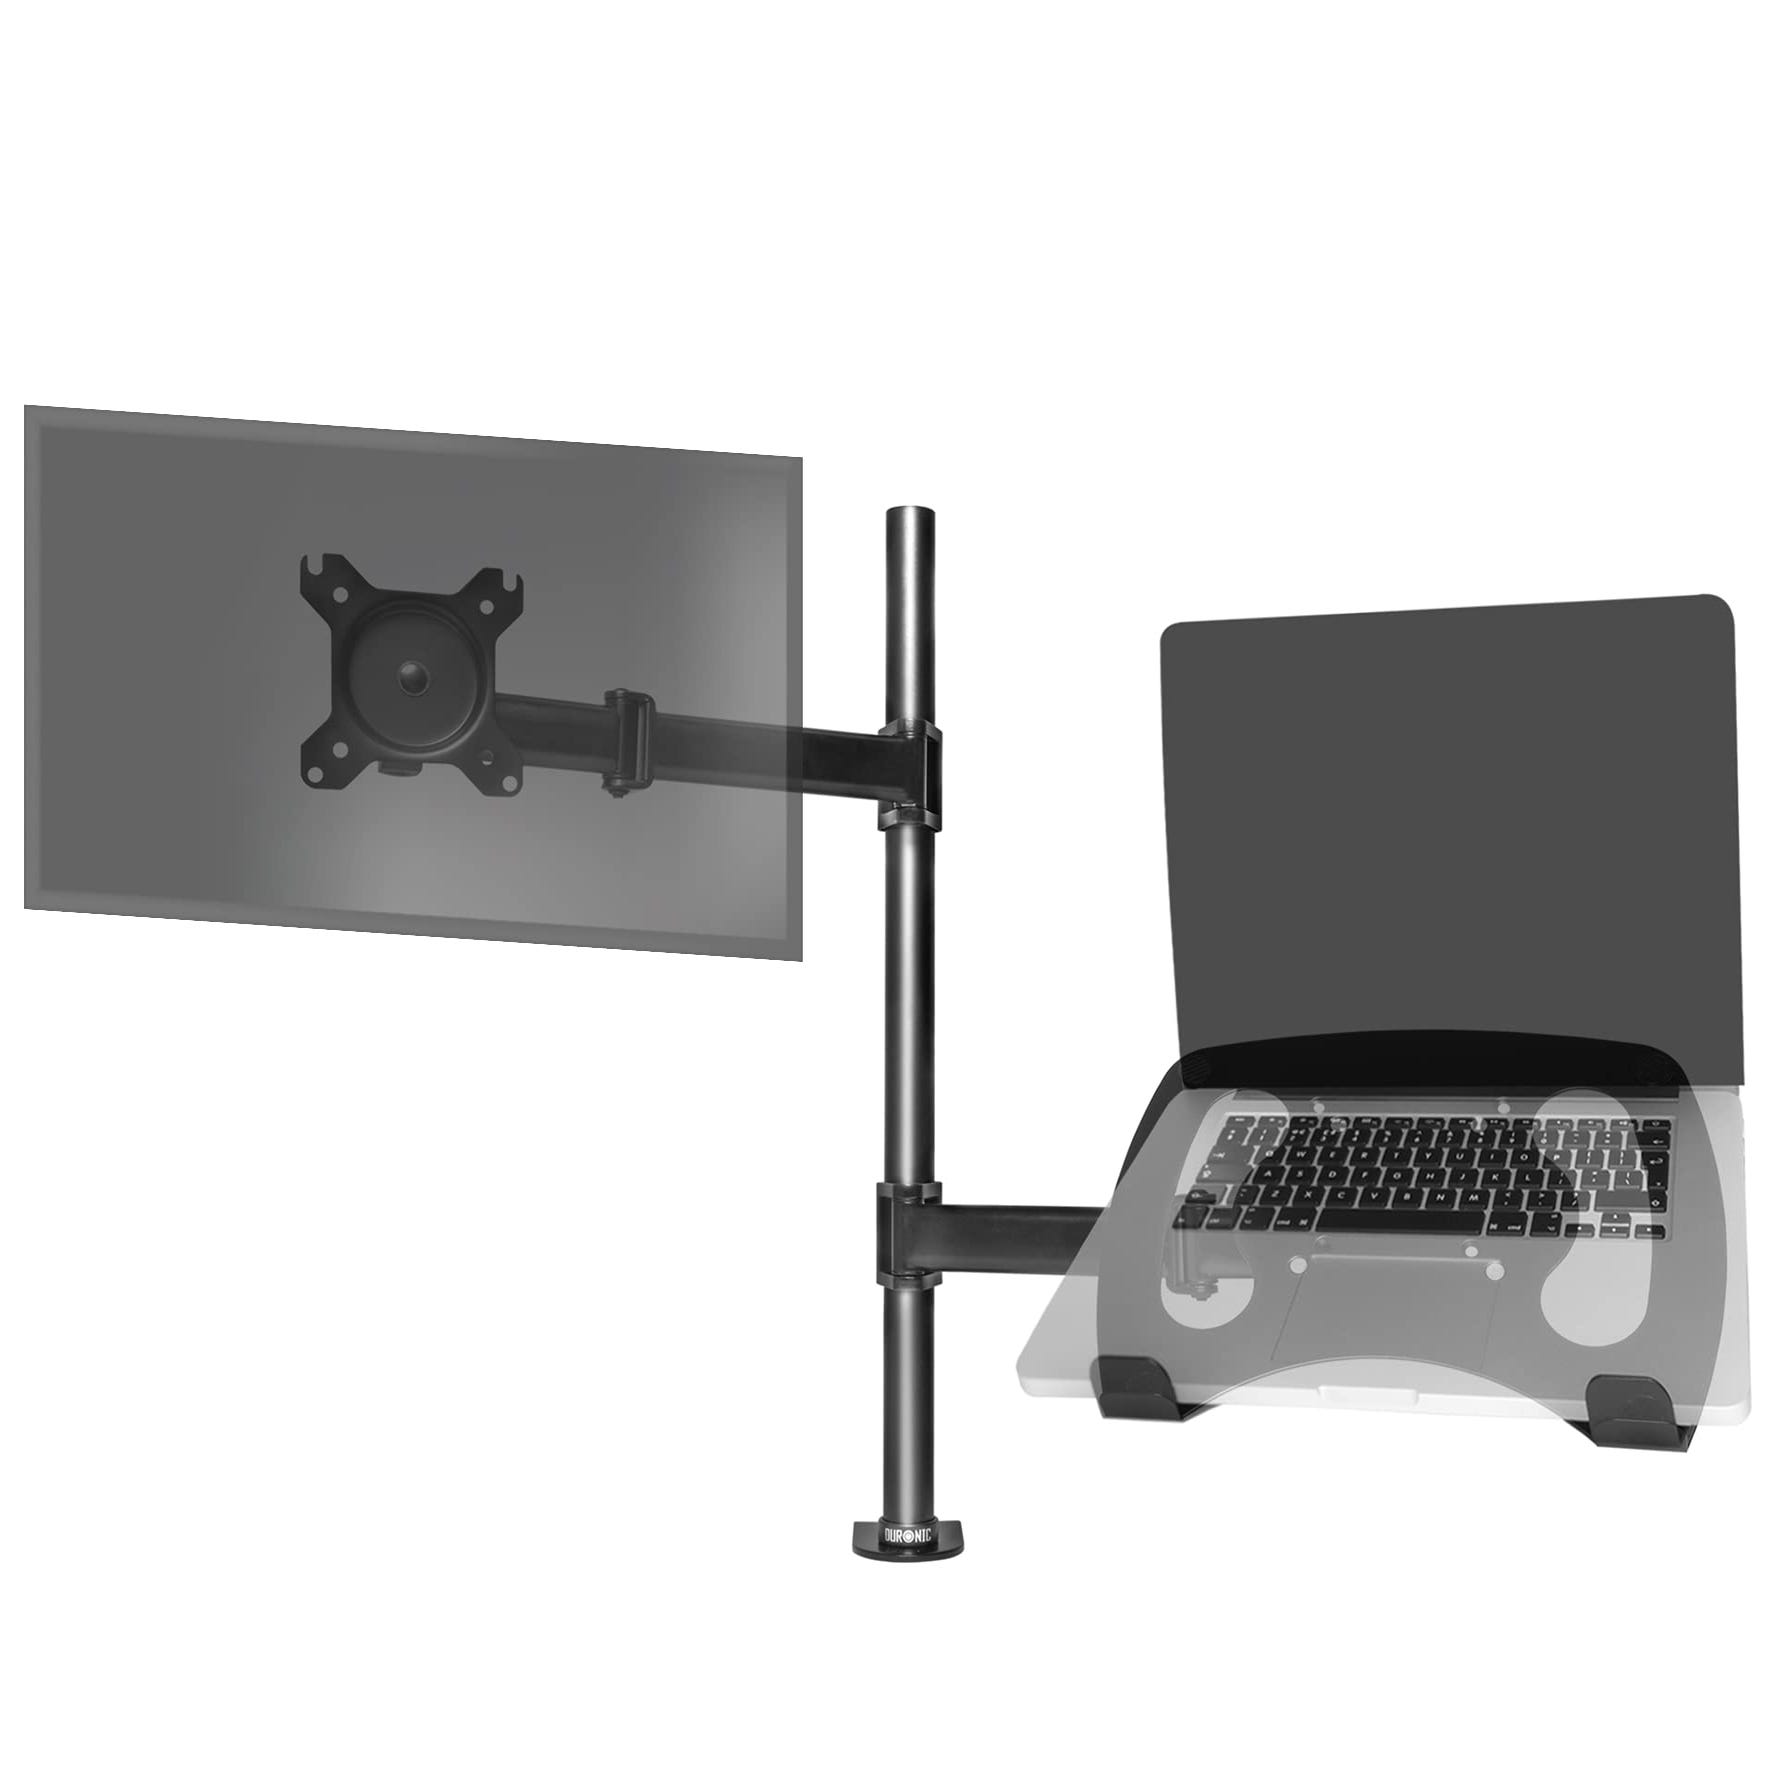 Supporto per PC portatile - Regolabile - Attacchi per monitor